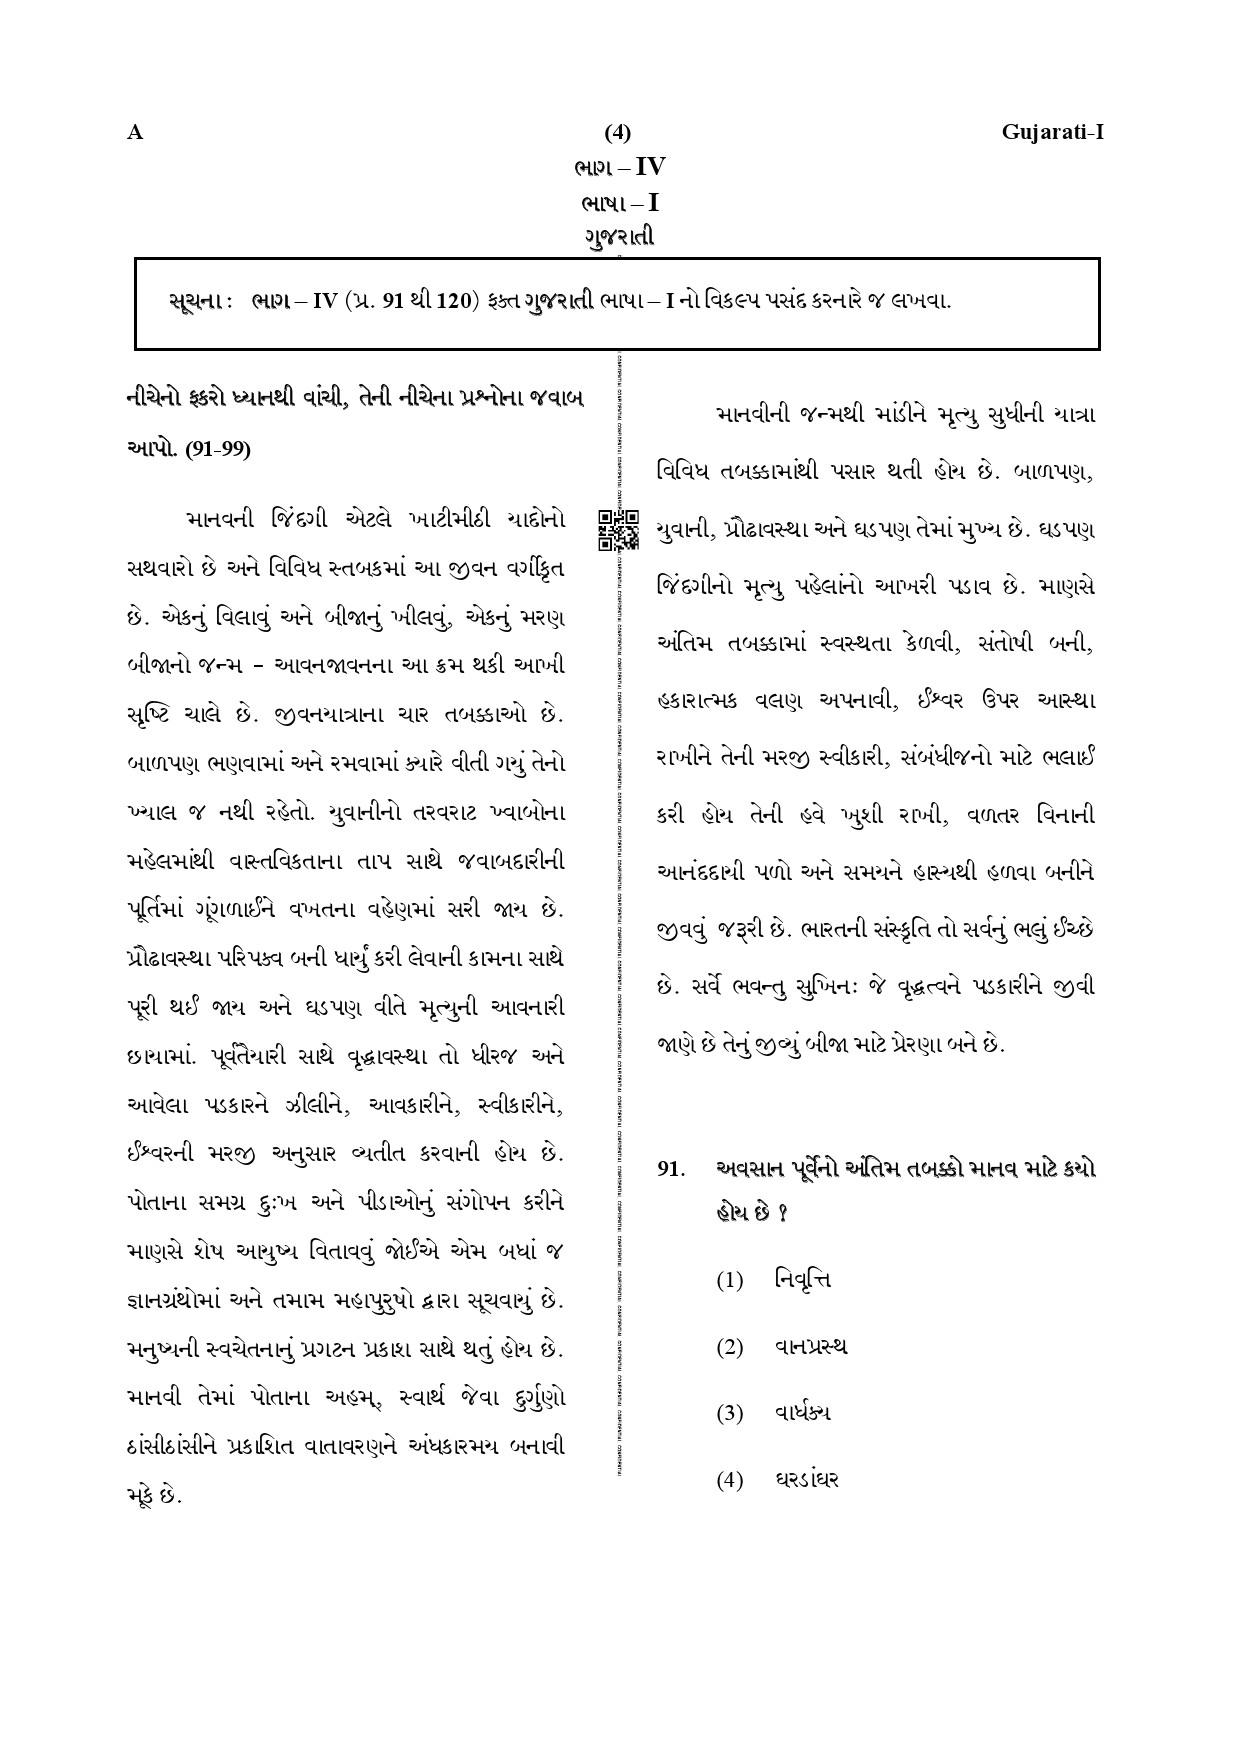 CTET December 2019 Paper 1 Part IV Language 1 Gujarati 1